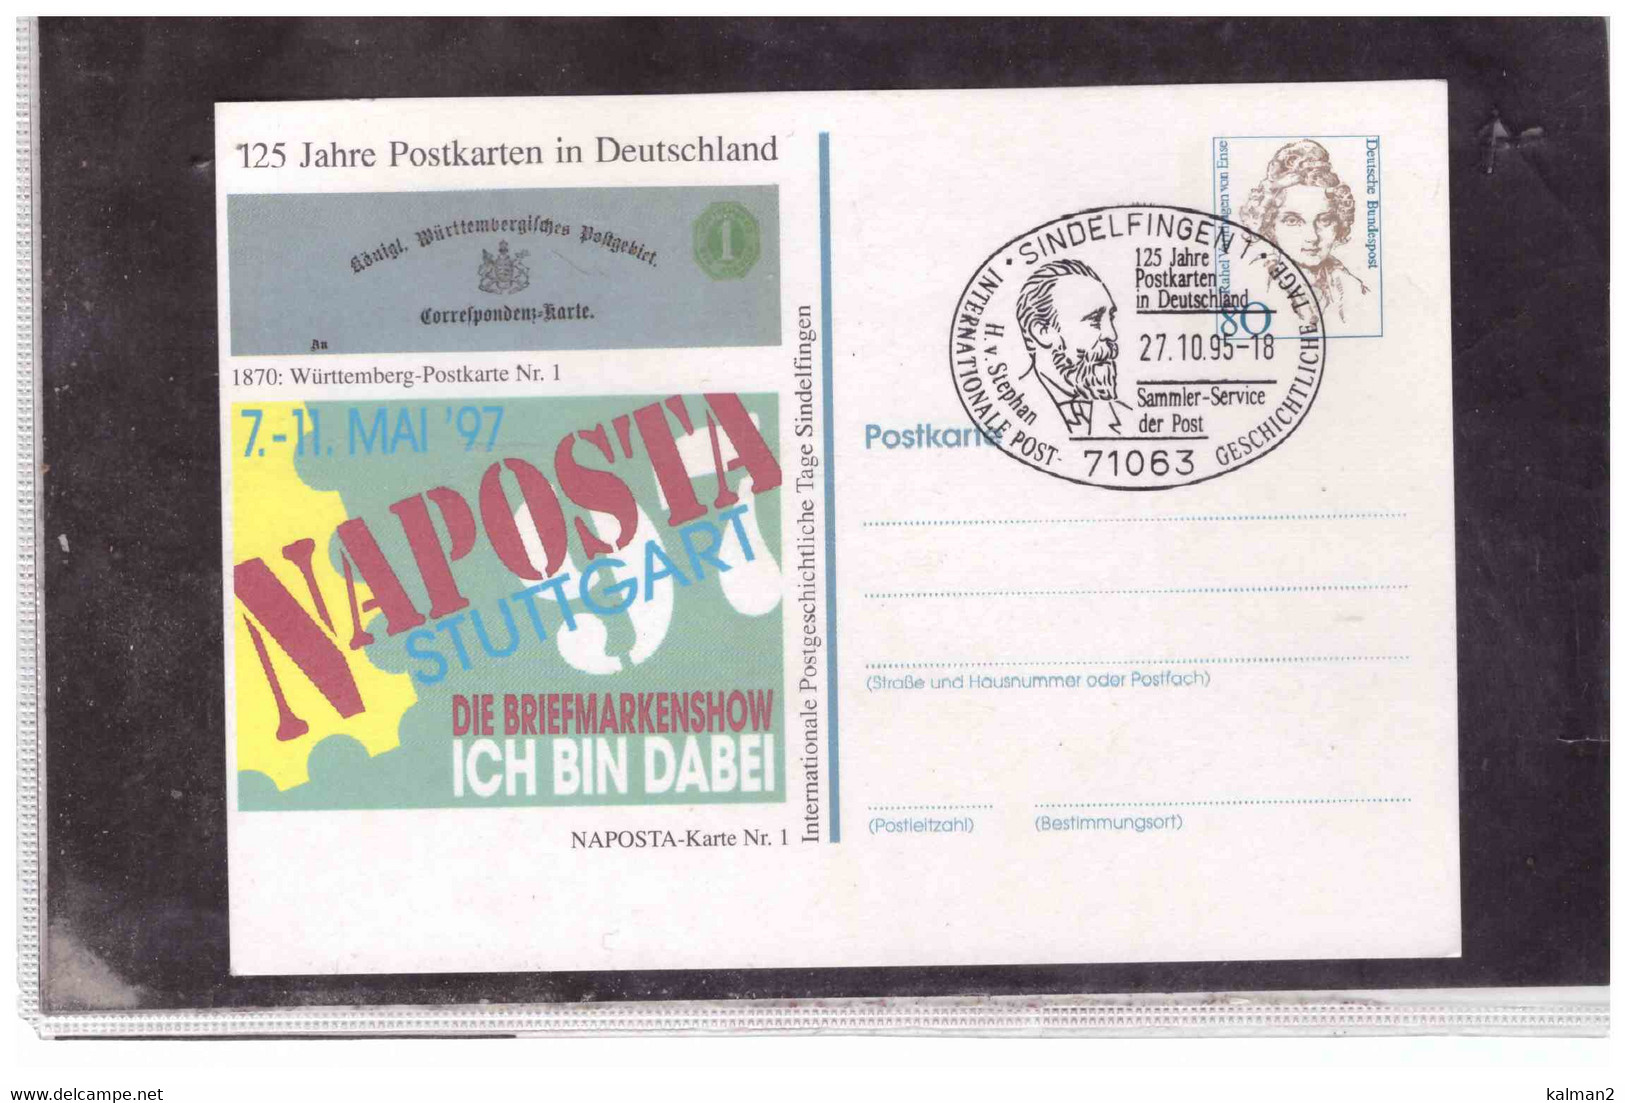 TEM13174 -  SINDELFINGEN  27.10.1995  /  PRIVAT ENTIRE "125 JAHRE POSTKARTEN IN DEUTSCHLAND " - Private Postcards - Used